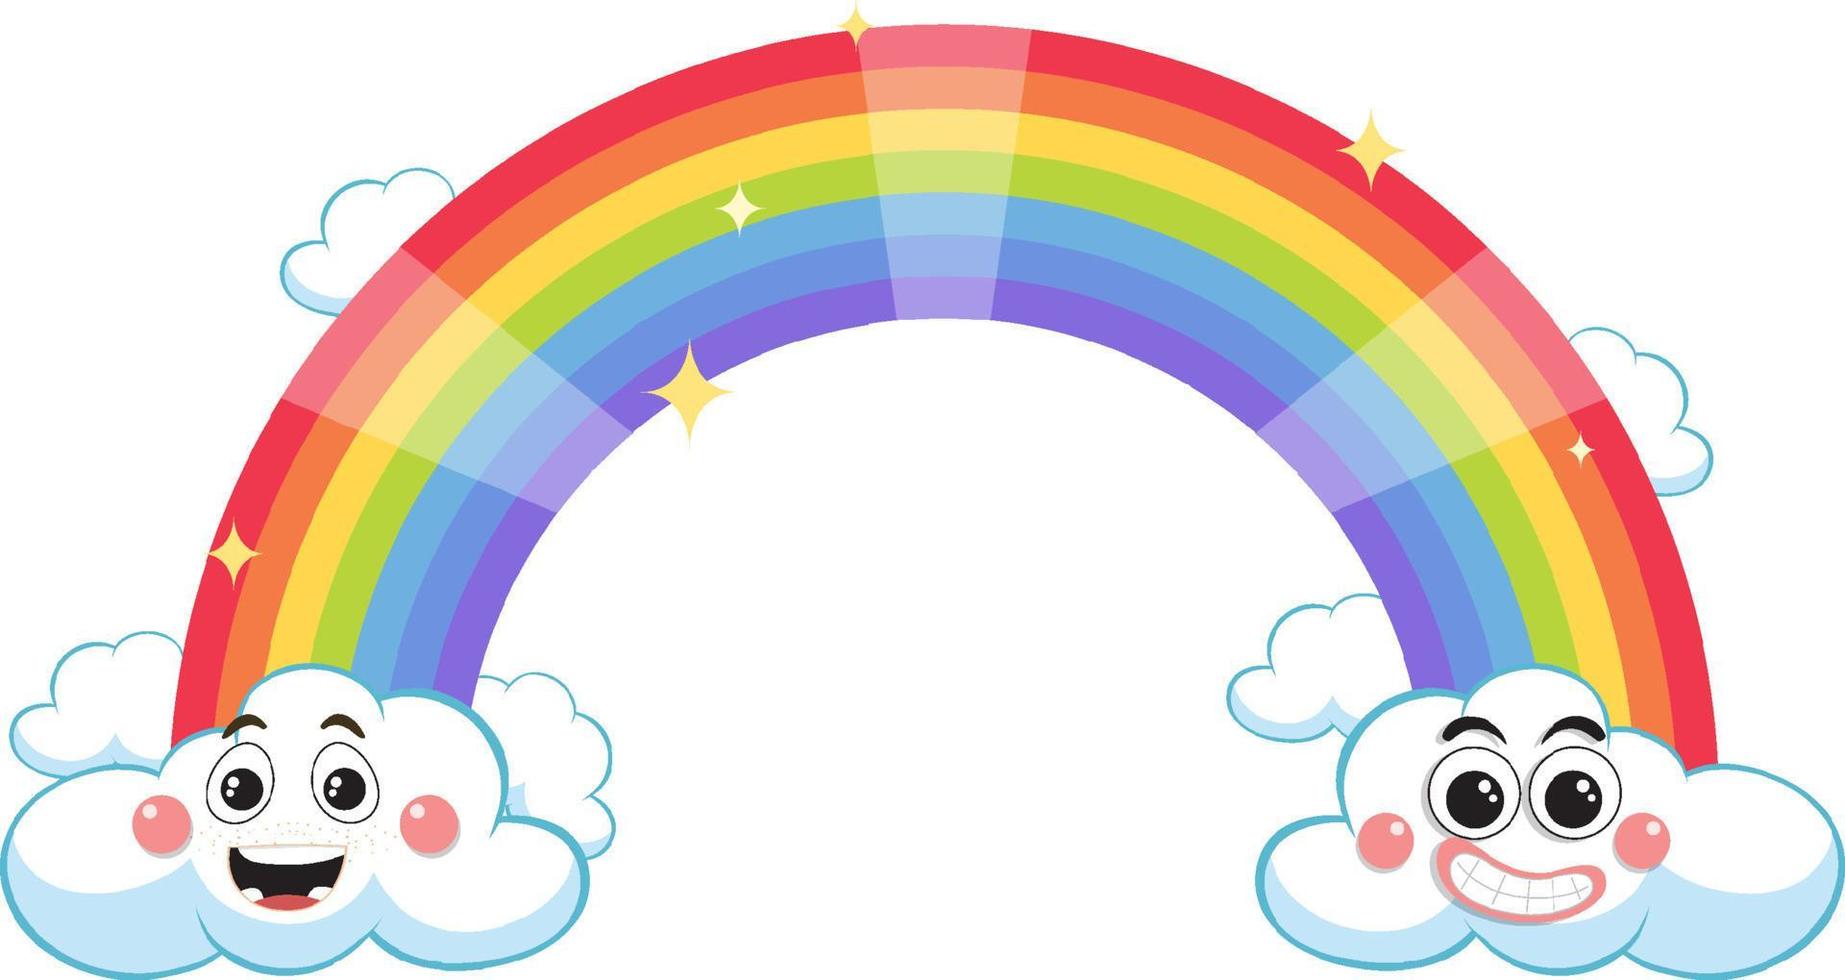 regenboog met wolken in tekenfilm stijl vector